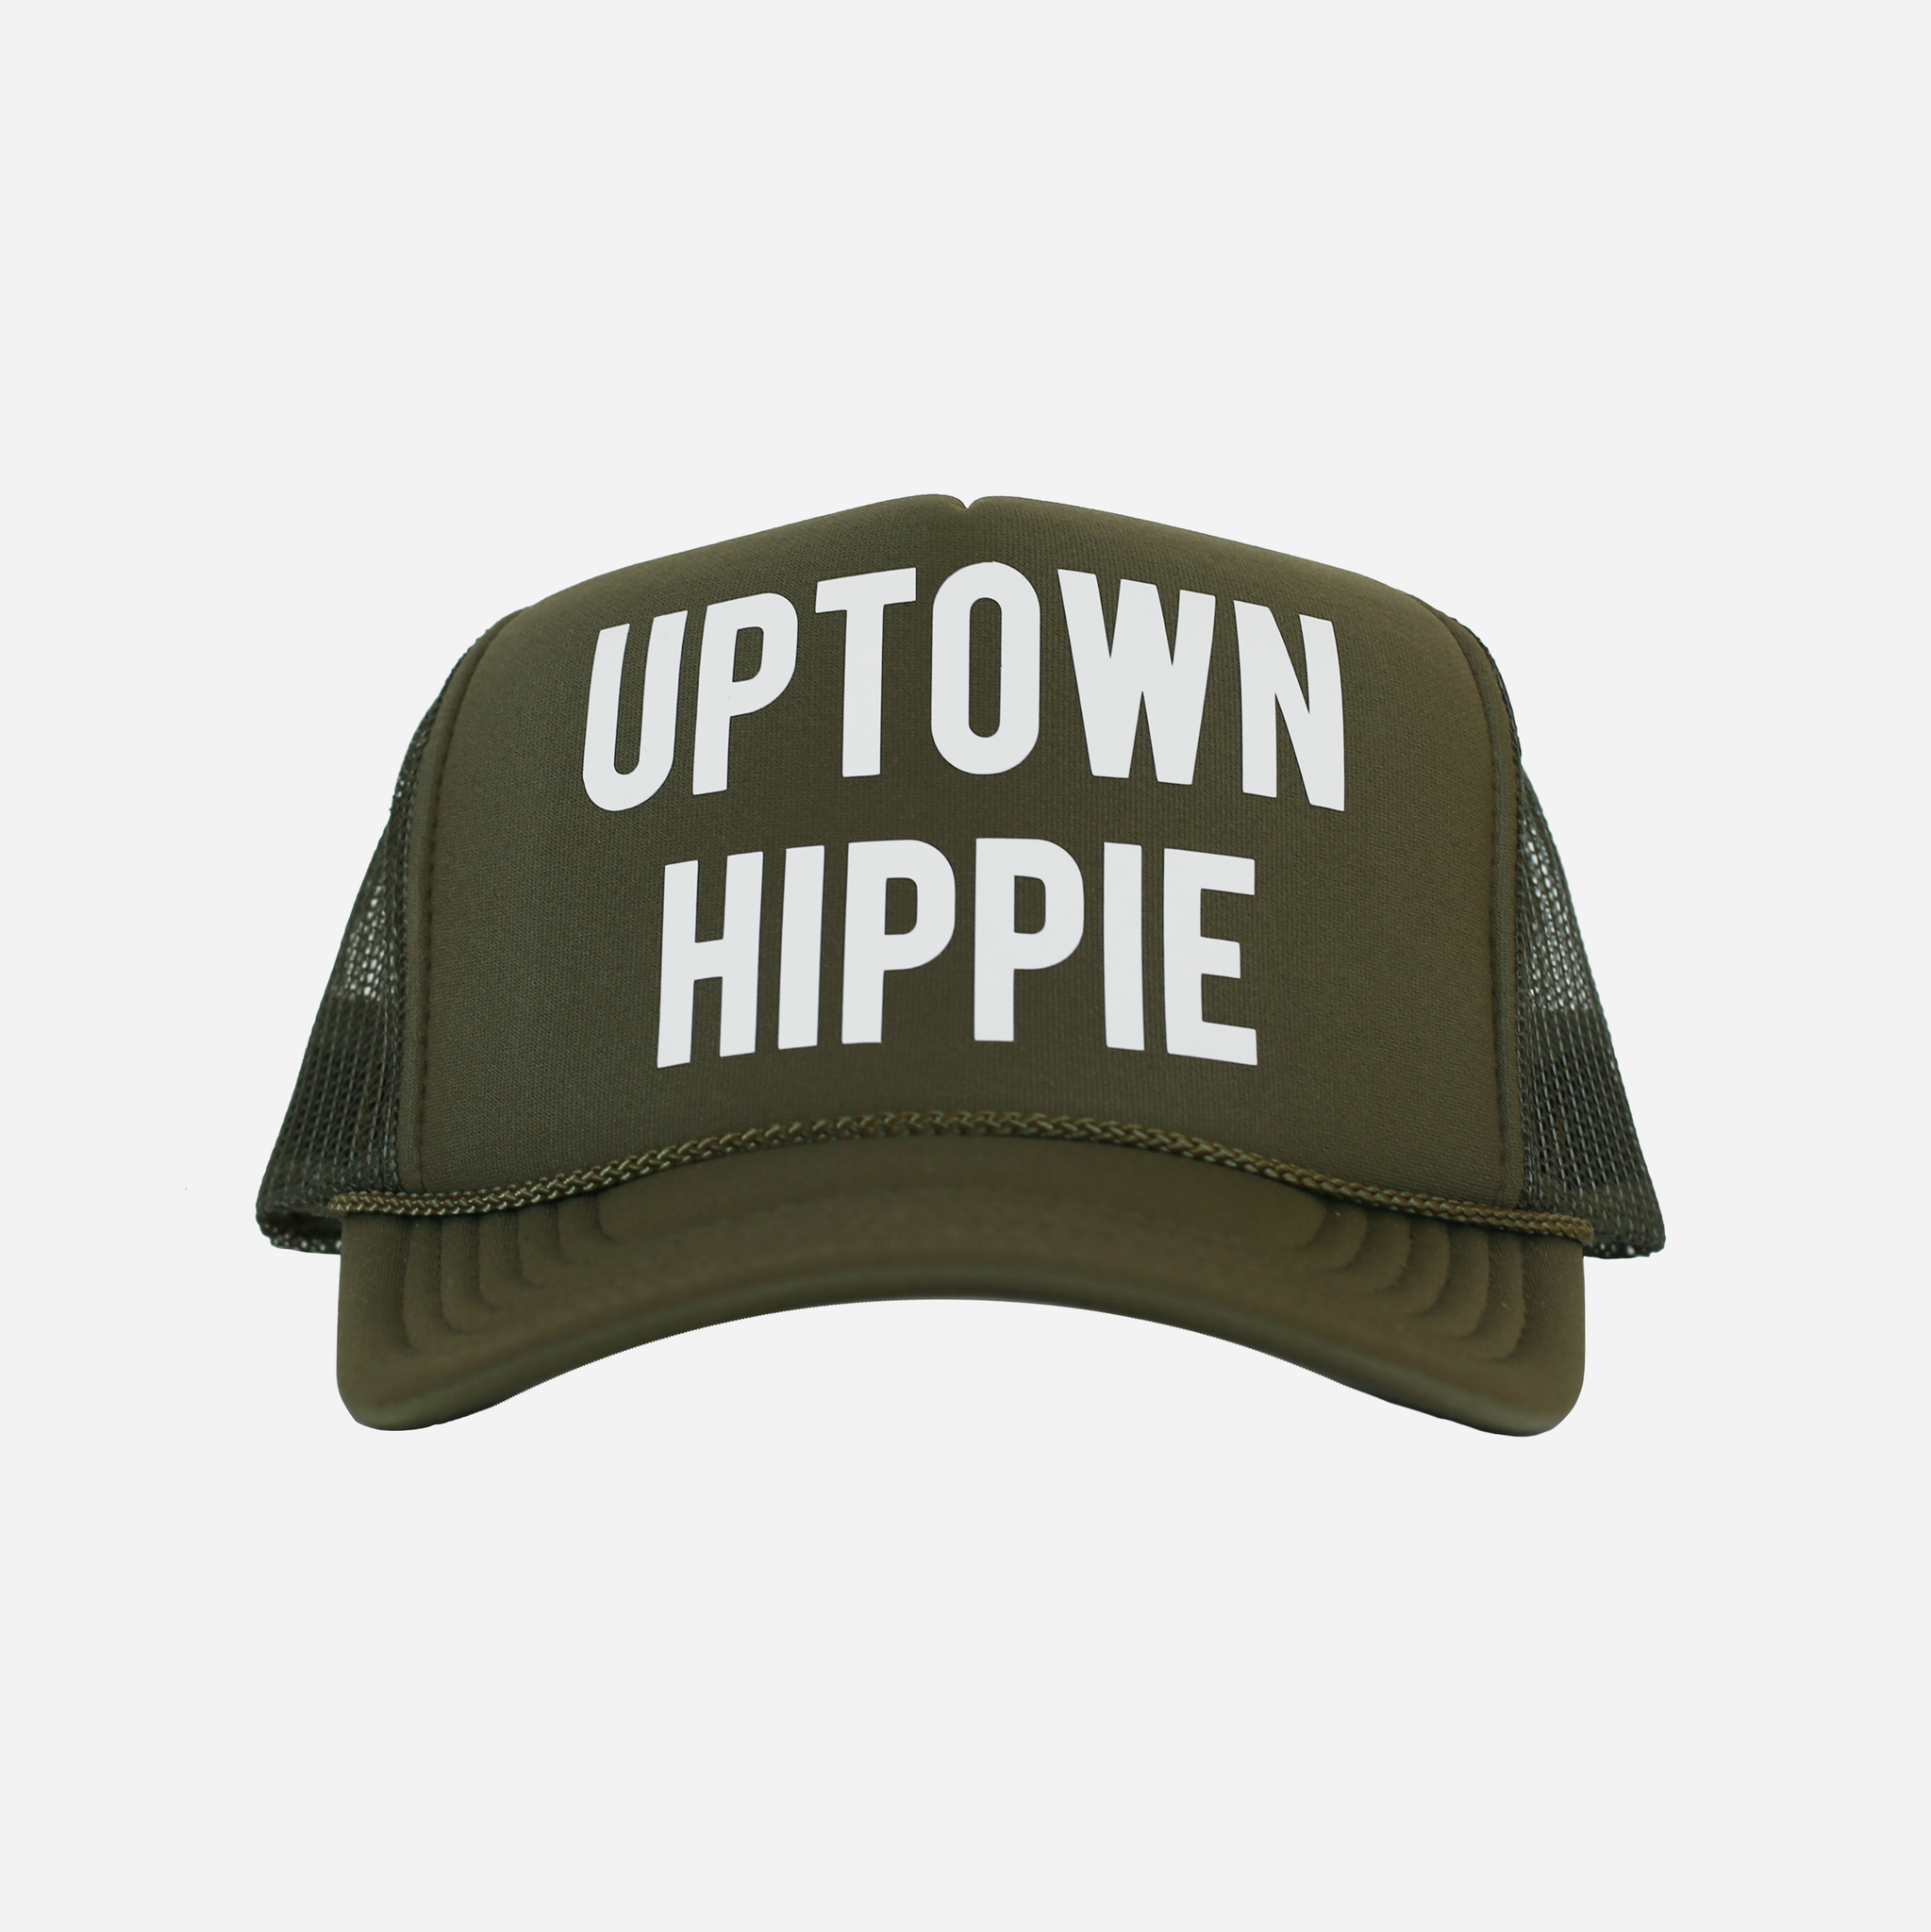 Uptown Hippie Trucker Hat